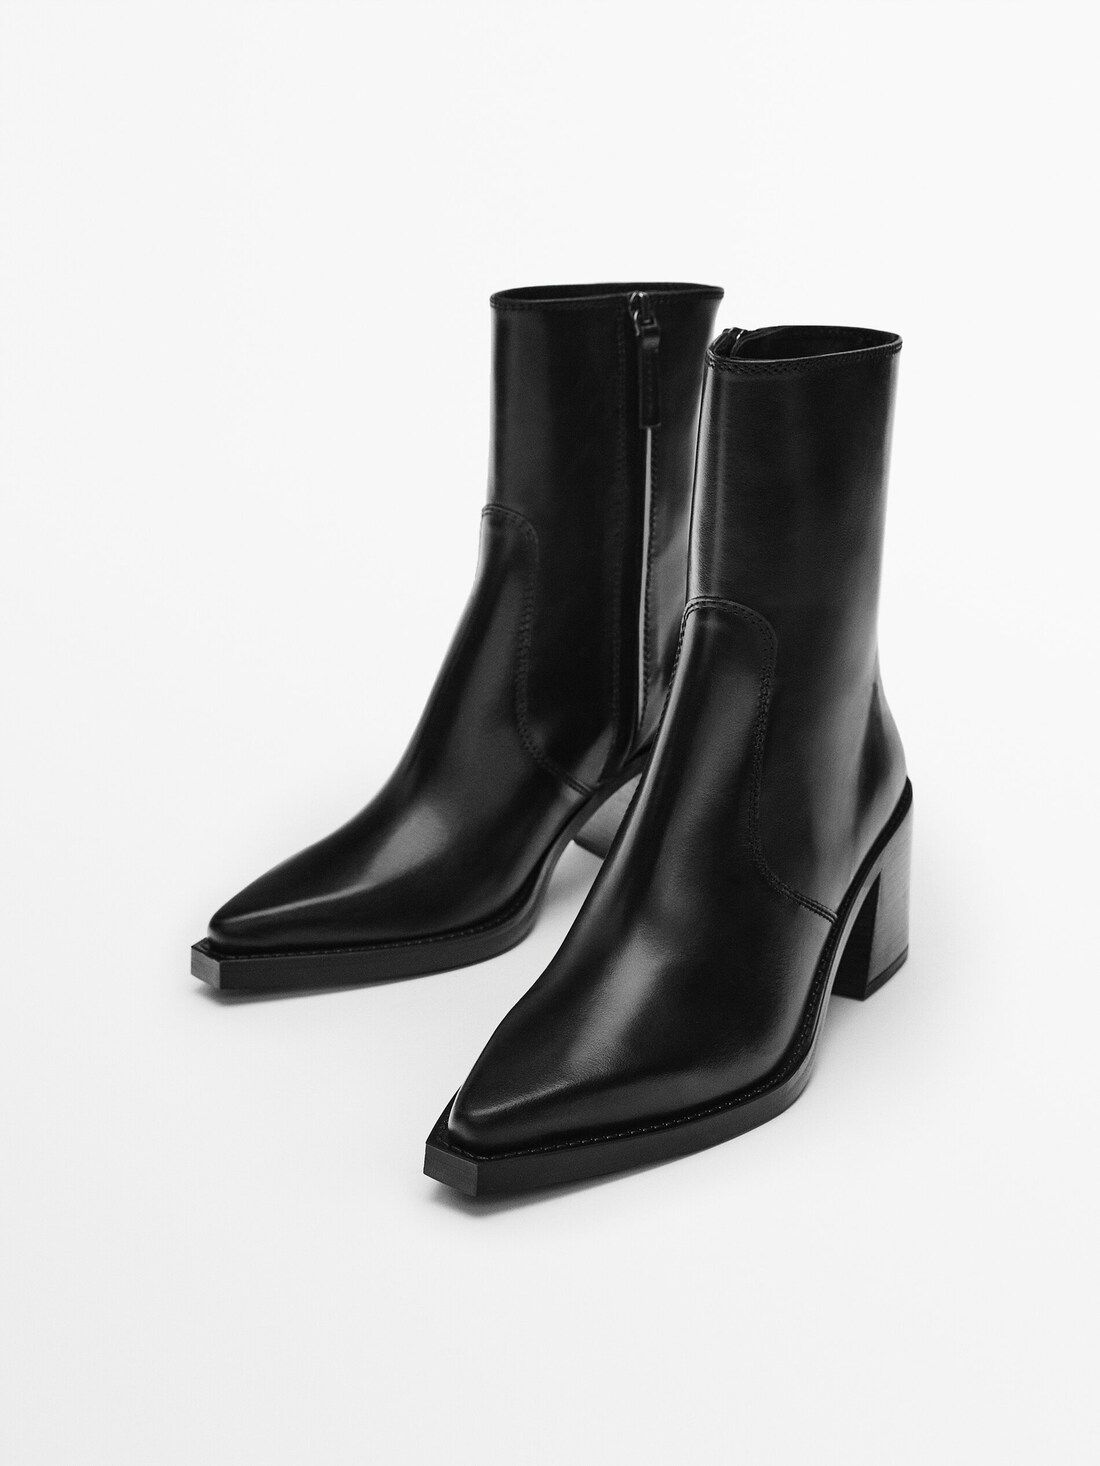 Leather square heel ankle boots - Massimo Dutti | Massimo Dutti (US)